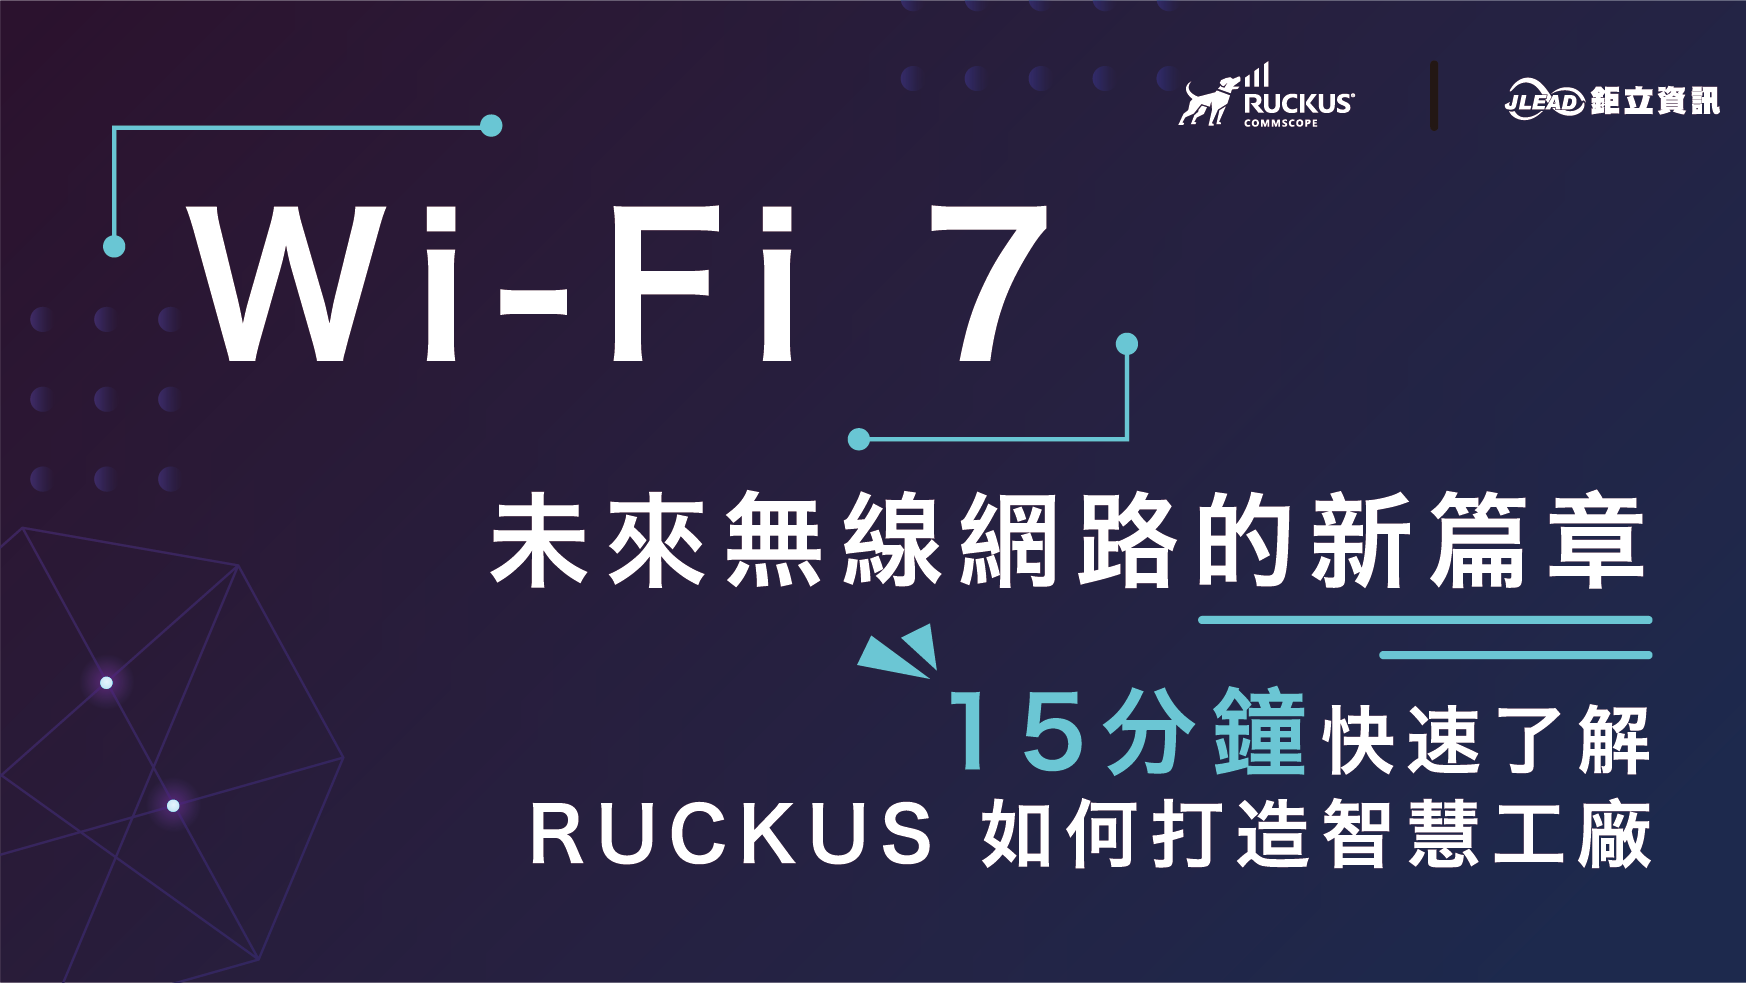 【免費參加】RUCKUS 2024/04/02 新竹智慧工廠論壇 - Wi-Fi 7 小講堂